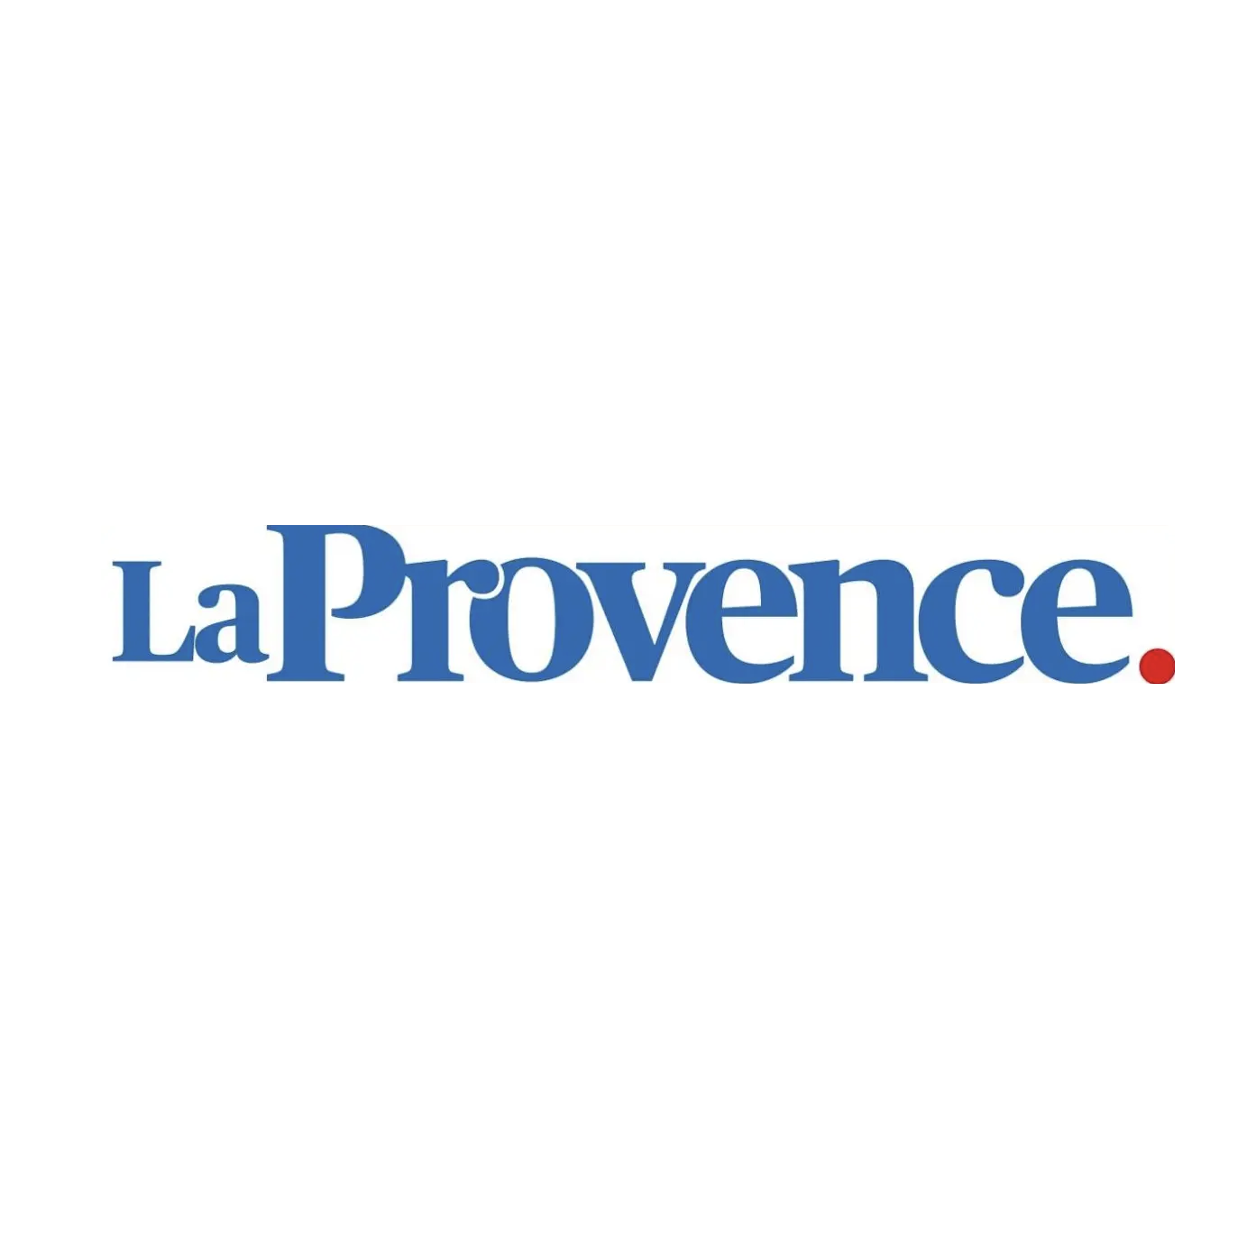 La Provence fait peau neuve - cercledubranding.fr